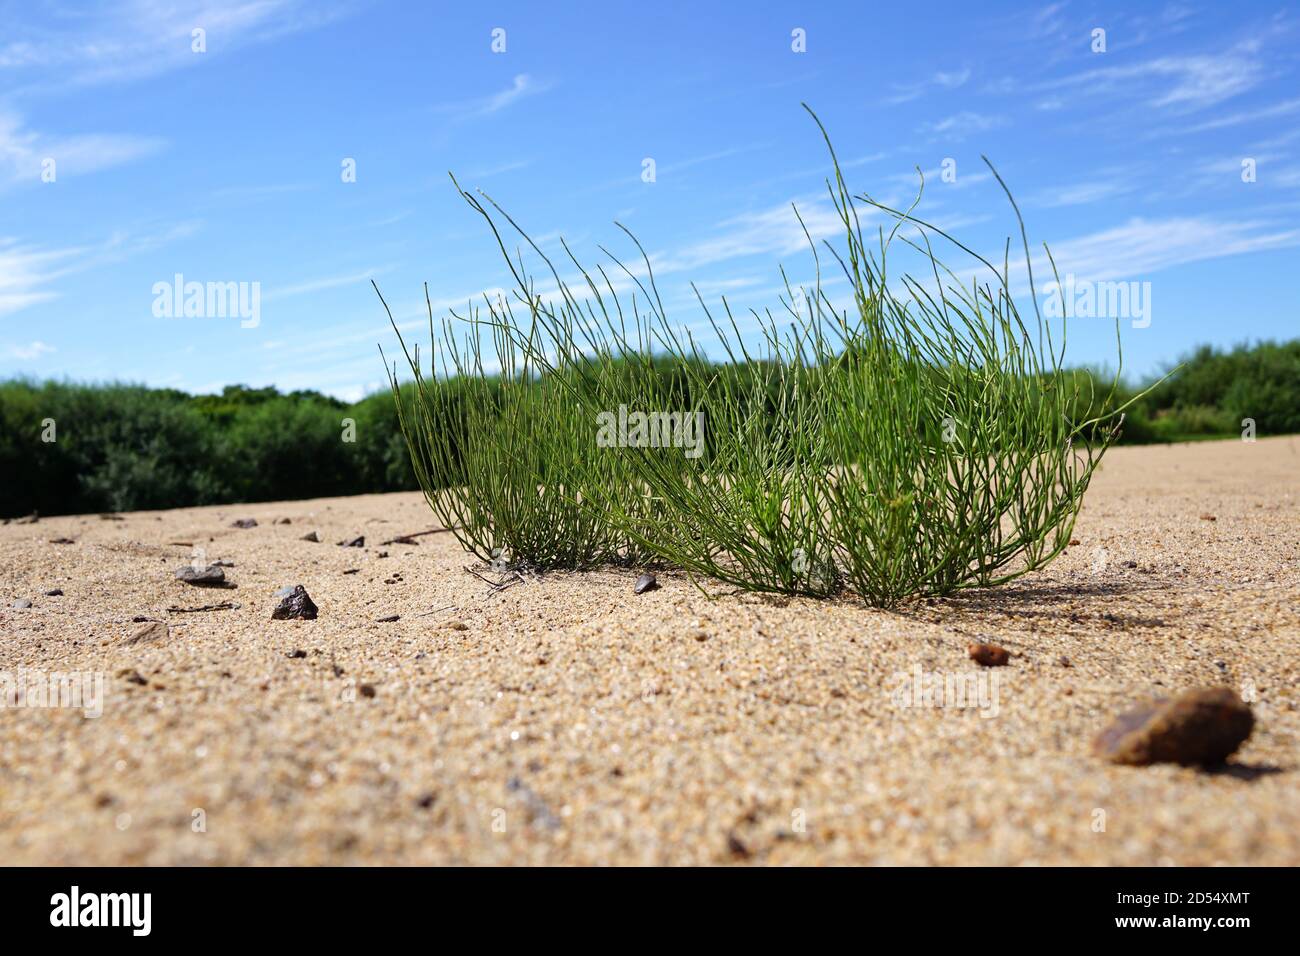 Grünes Gras auf den Sanddünen. Hinter dem Gras ist ein blauer Himmel mit schönen weißen Wolken. Schachtelhalm auf gelbem Sand Nahaufnahme. Russland, Wladiwostok Stockfoto